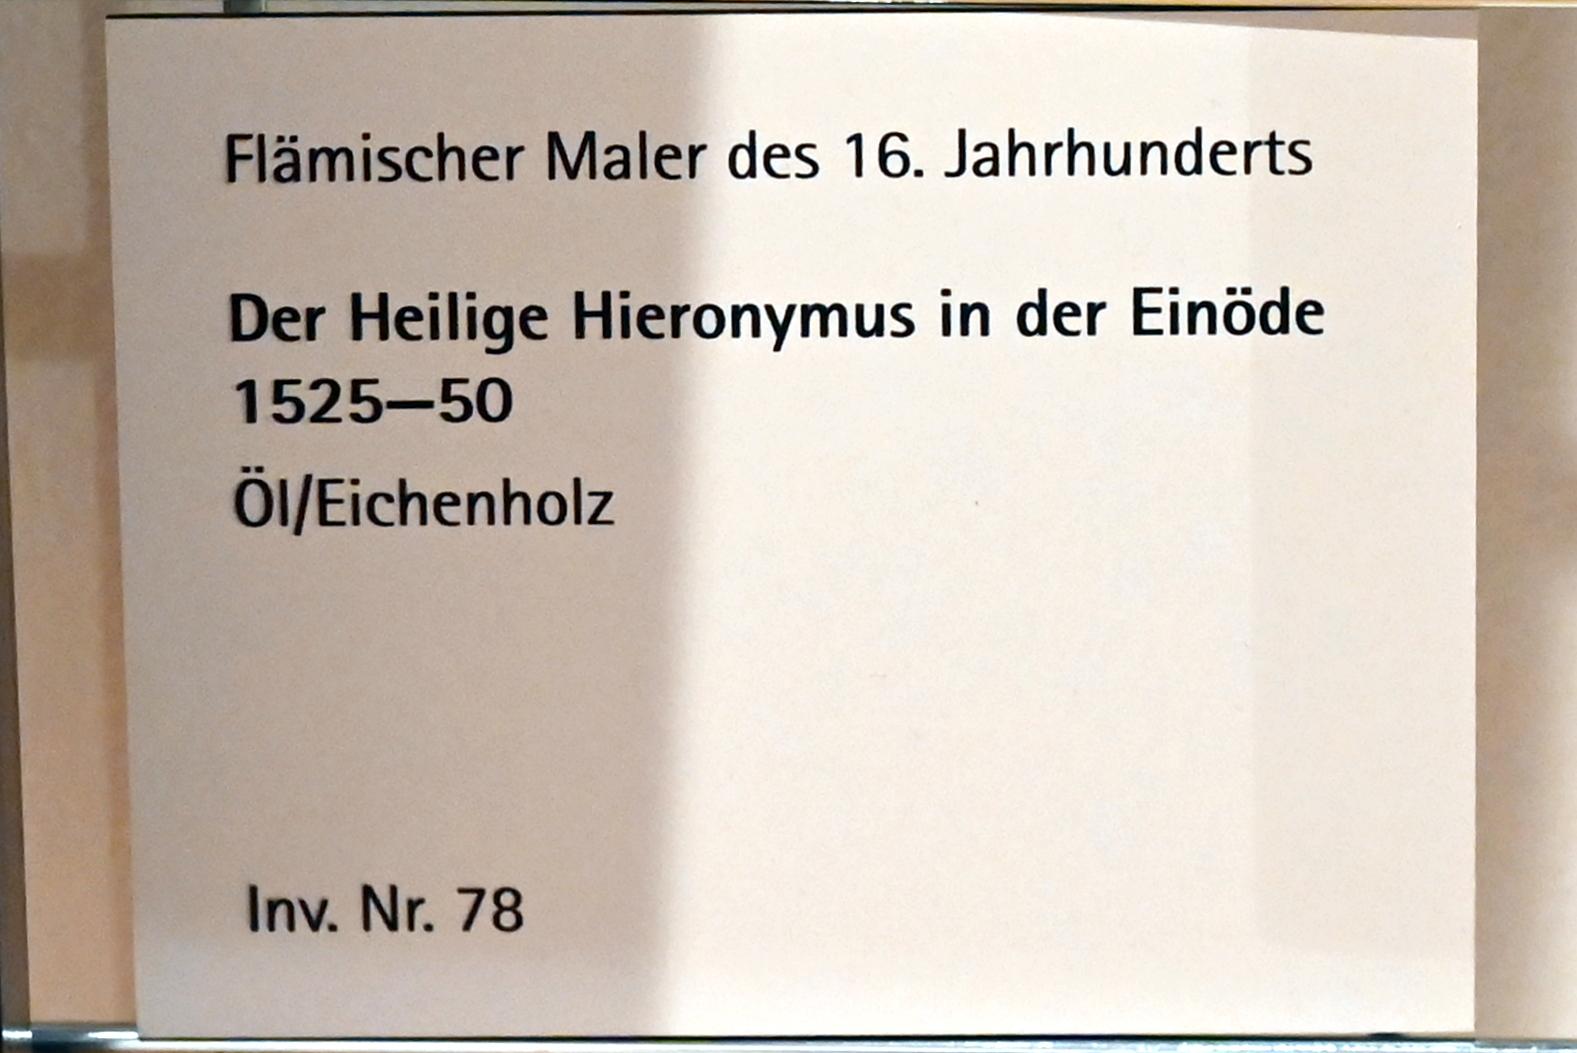 Der Heilige Hieronymus in der Einöde, Mainz, Landesmuseum, Schaudepot, 1525–1550, Bild 2/2